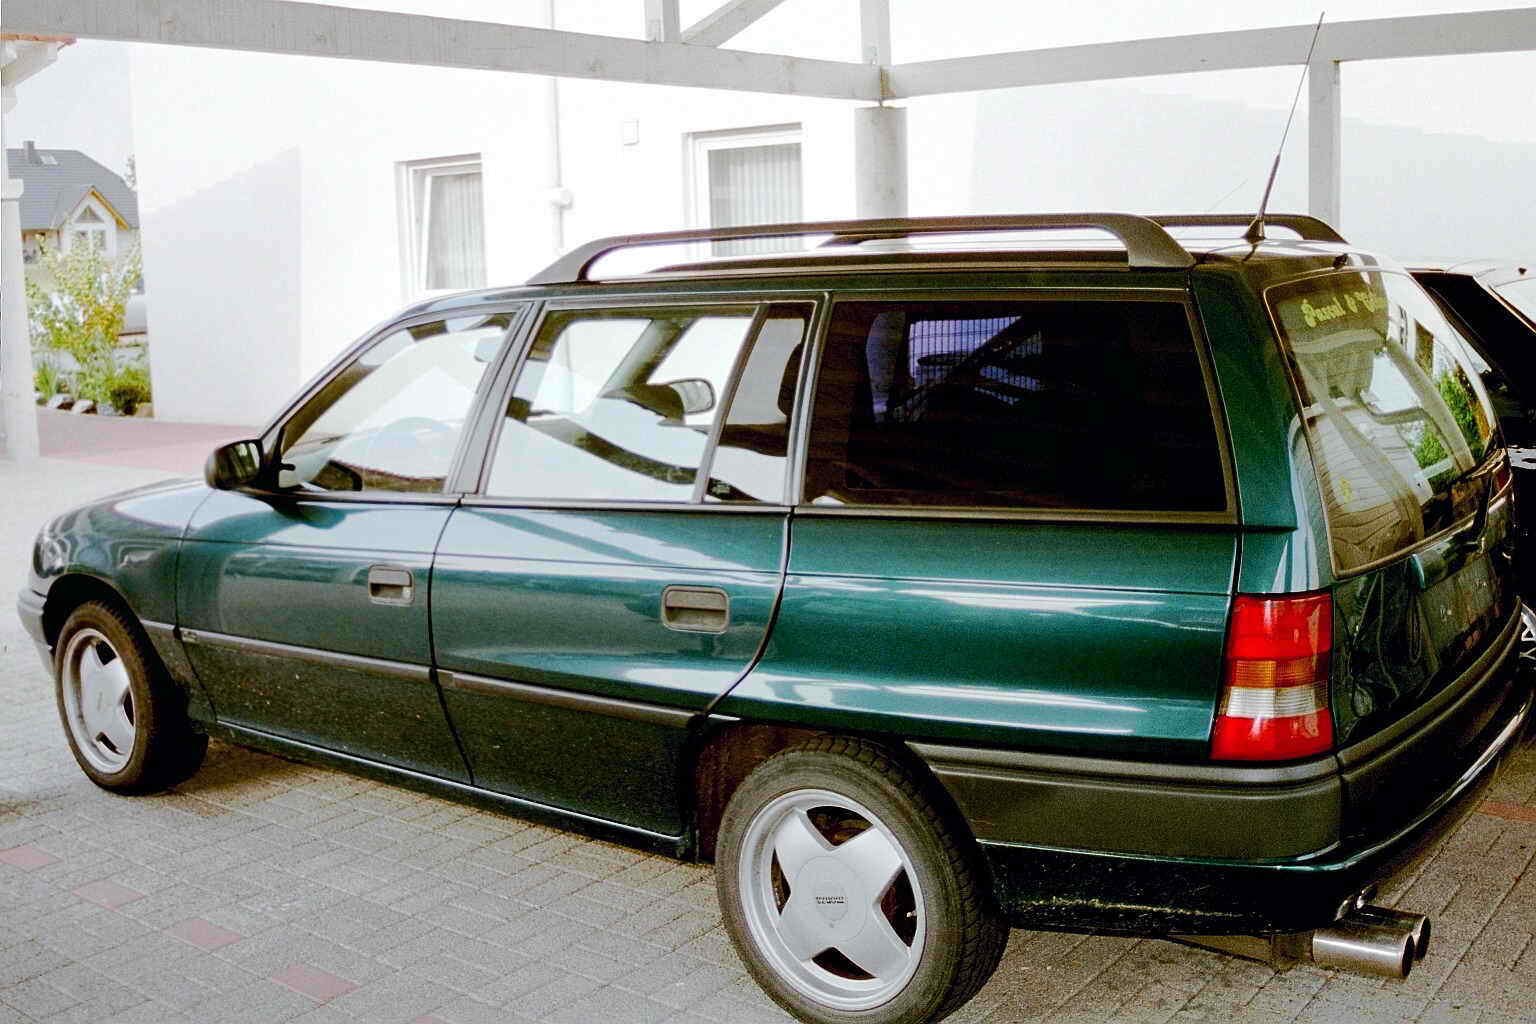 Опель универсал f. Opel Astra Caravan универсал 1997. Opel Astra f 1995 универсал. Opel Astra f 1997 универсал.